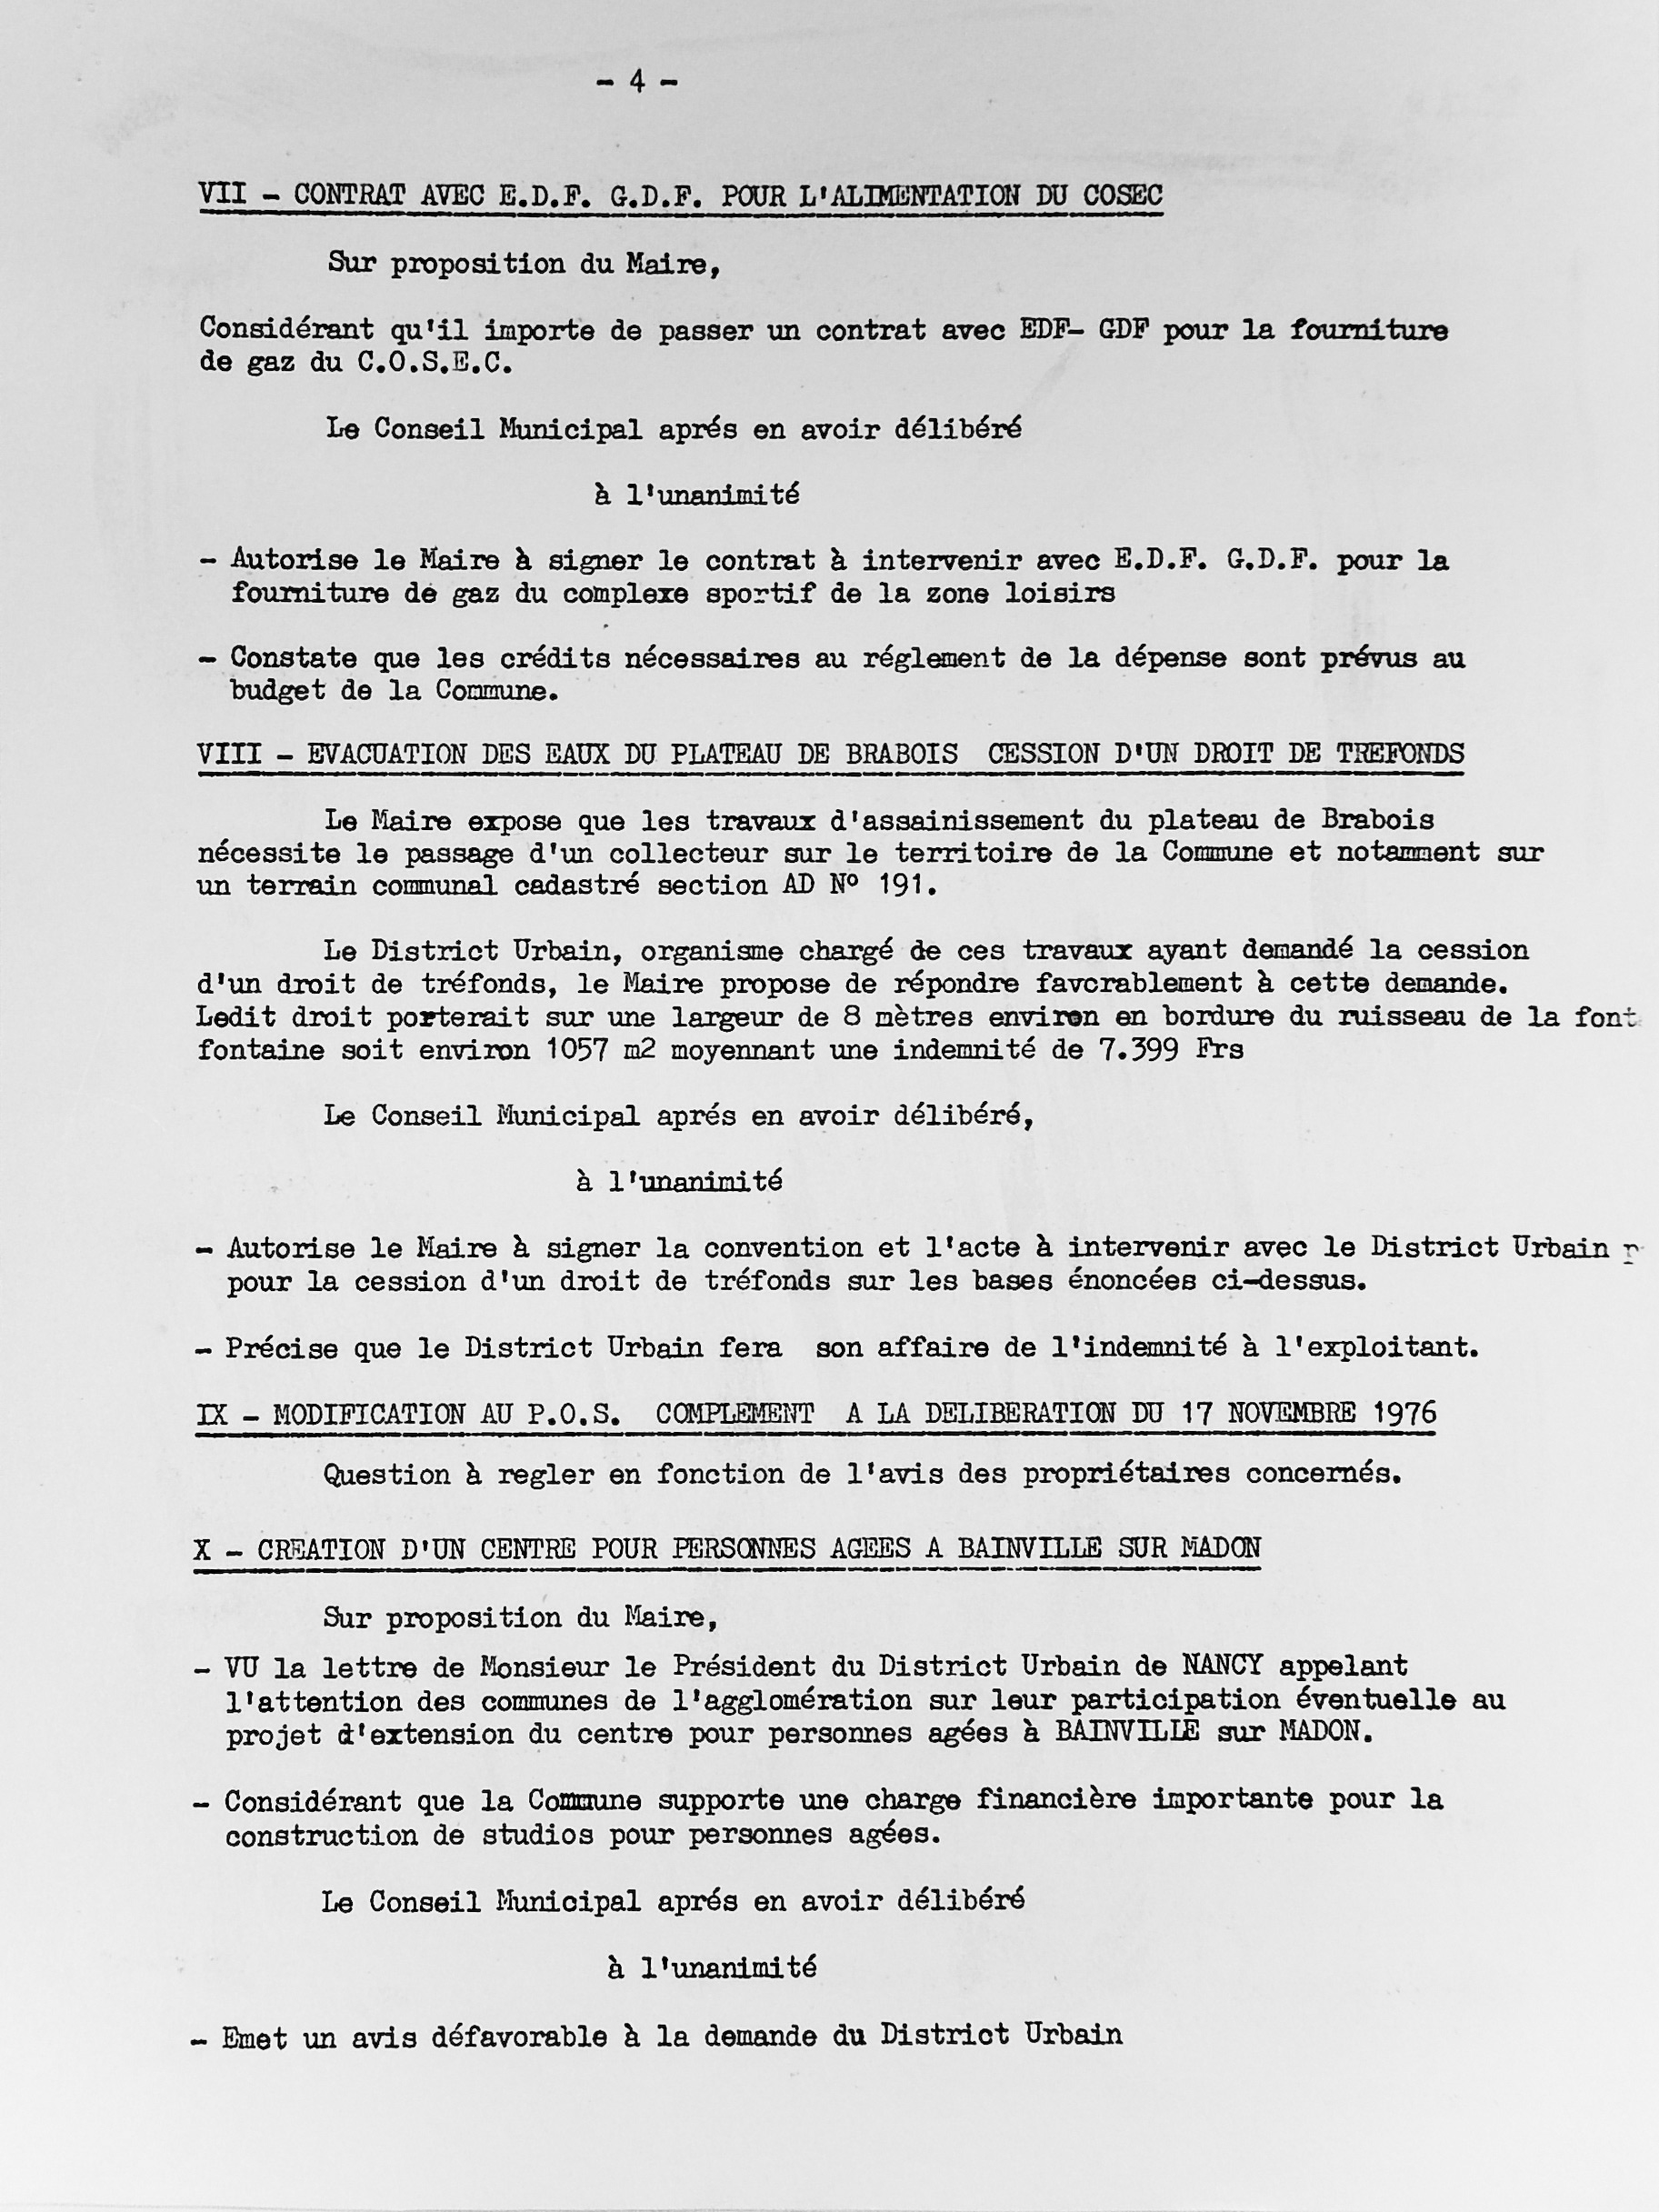 Feuillet_081B-1974-1977.jpg